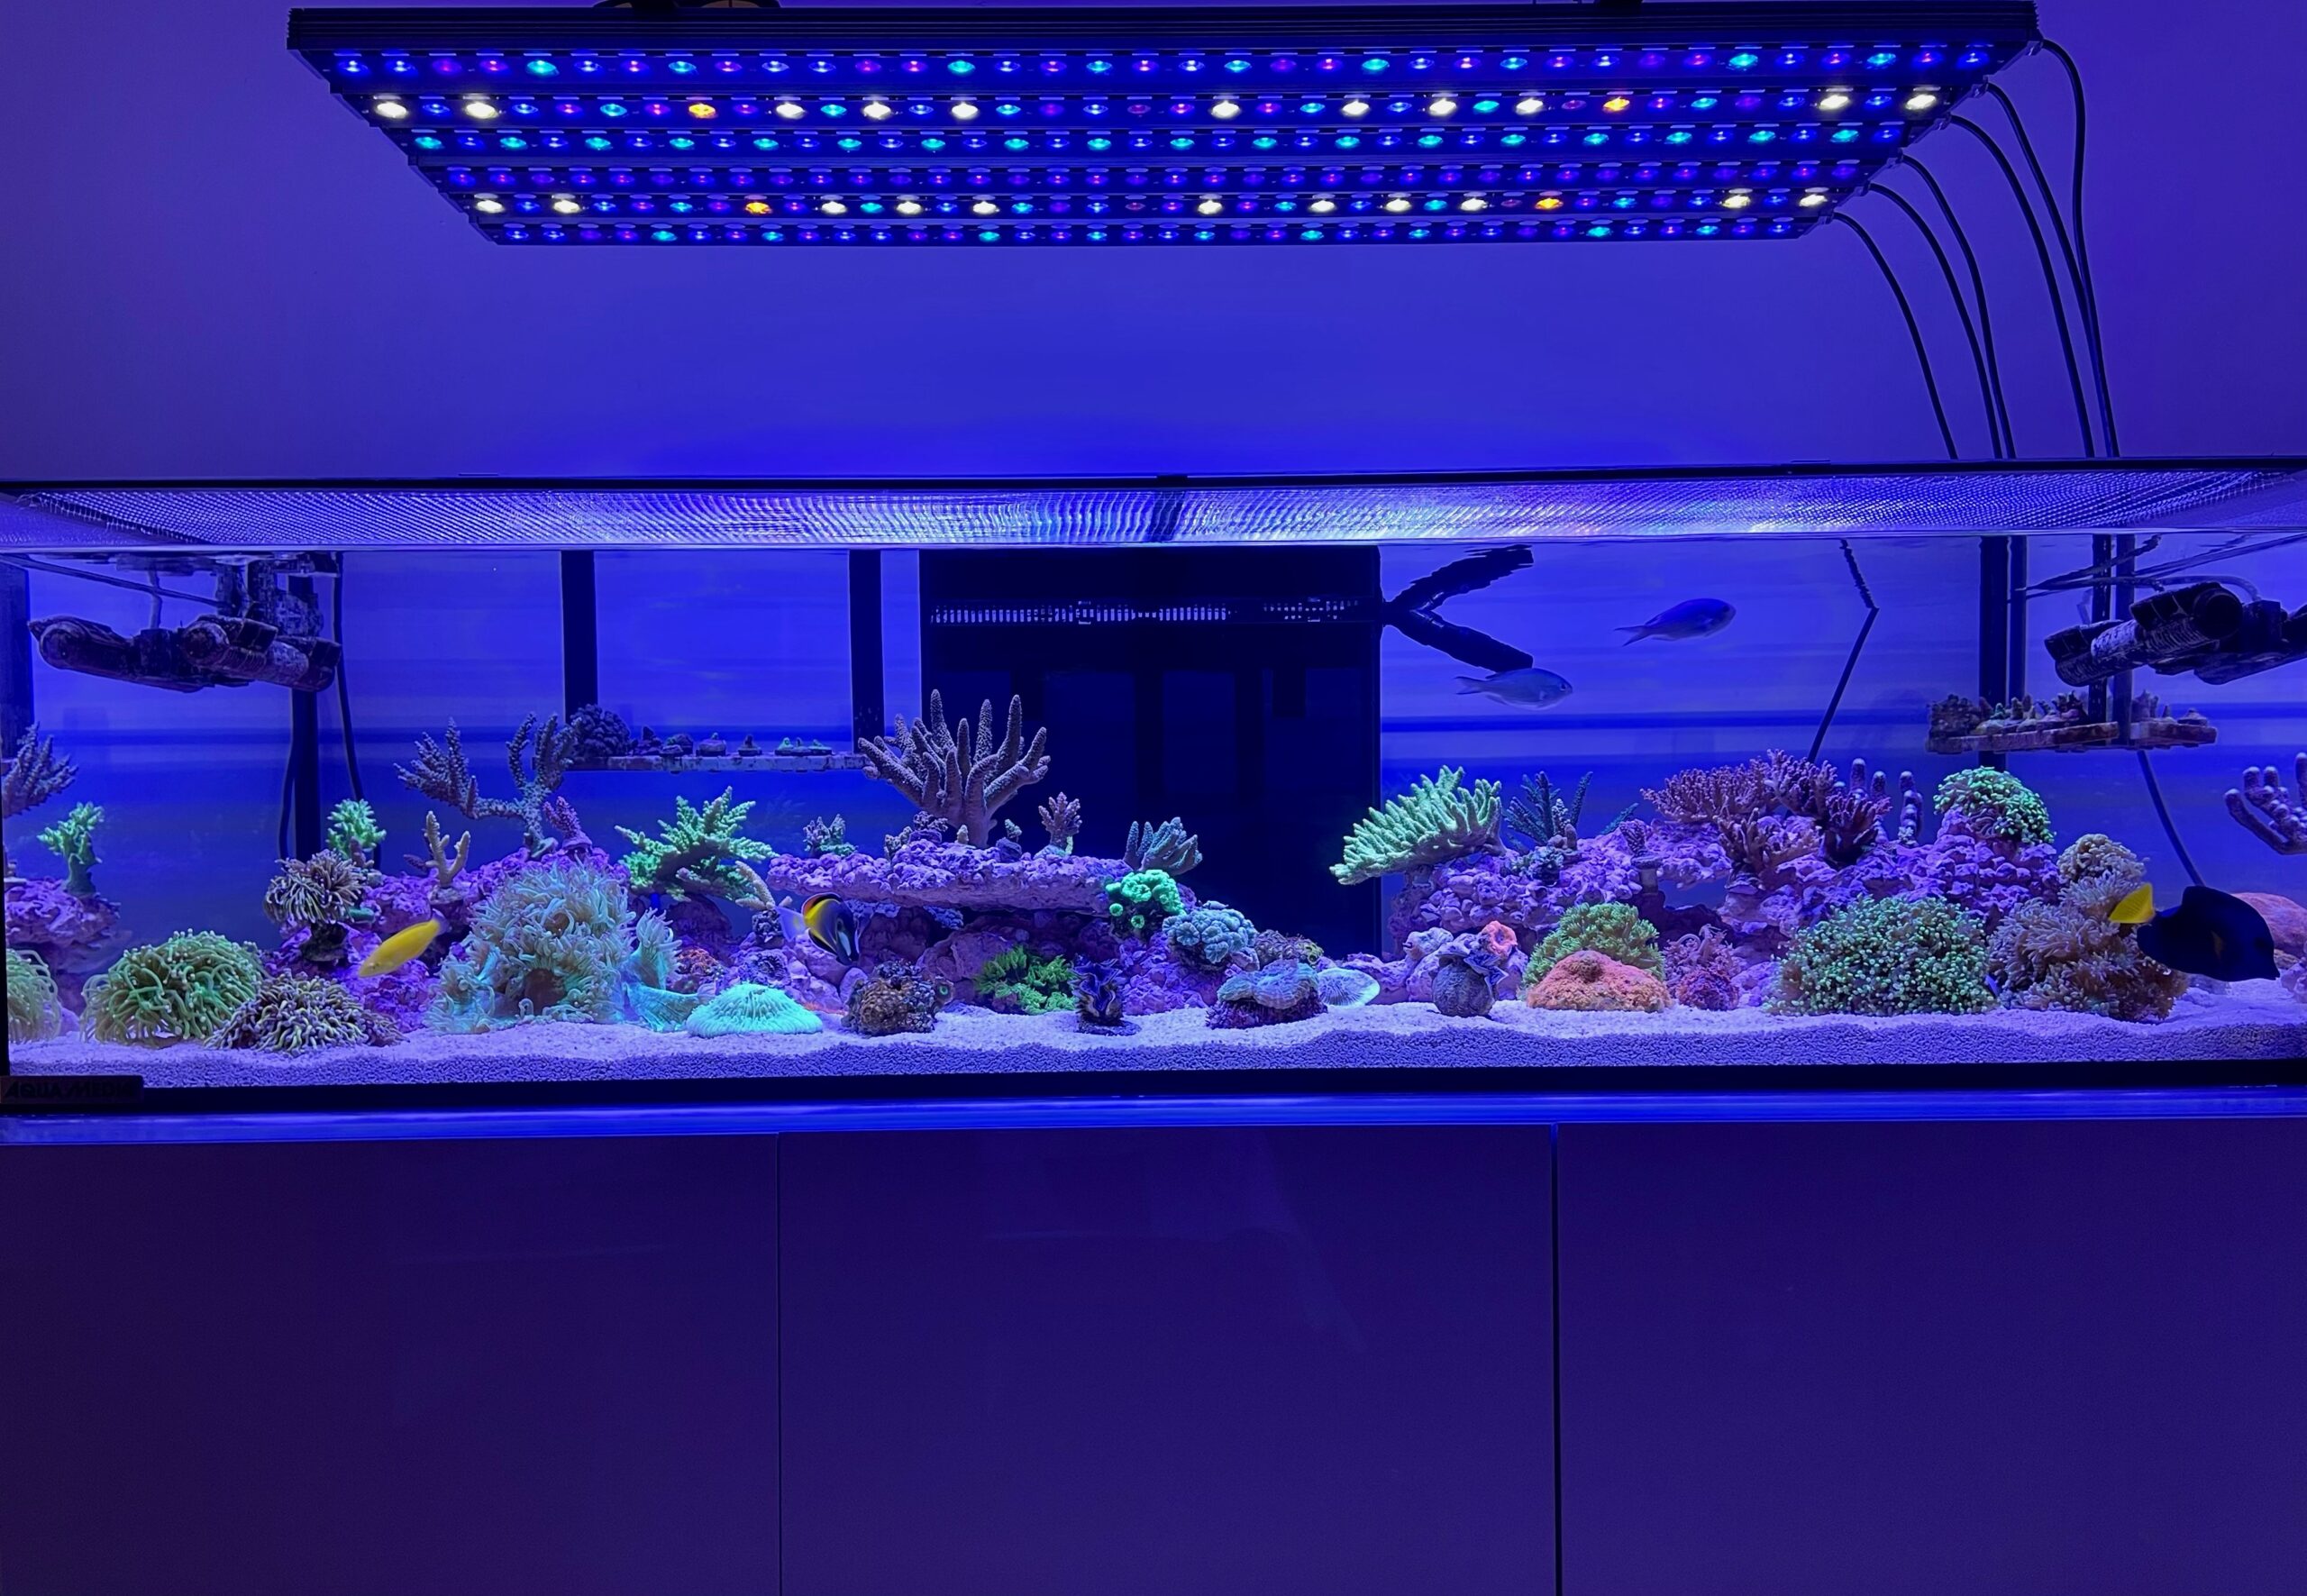 osix-or3-reef-acquario-illuminazione-a-led-1